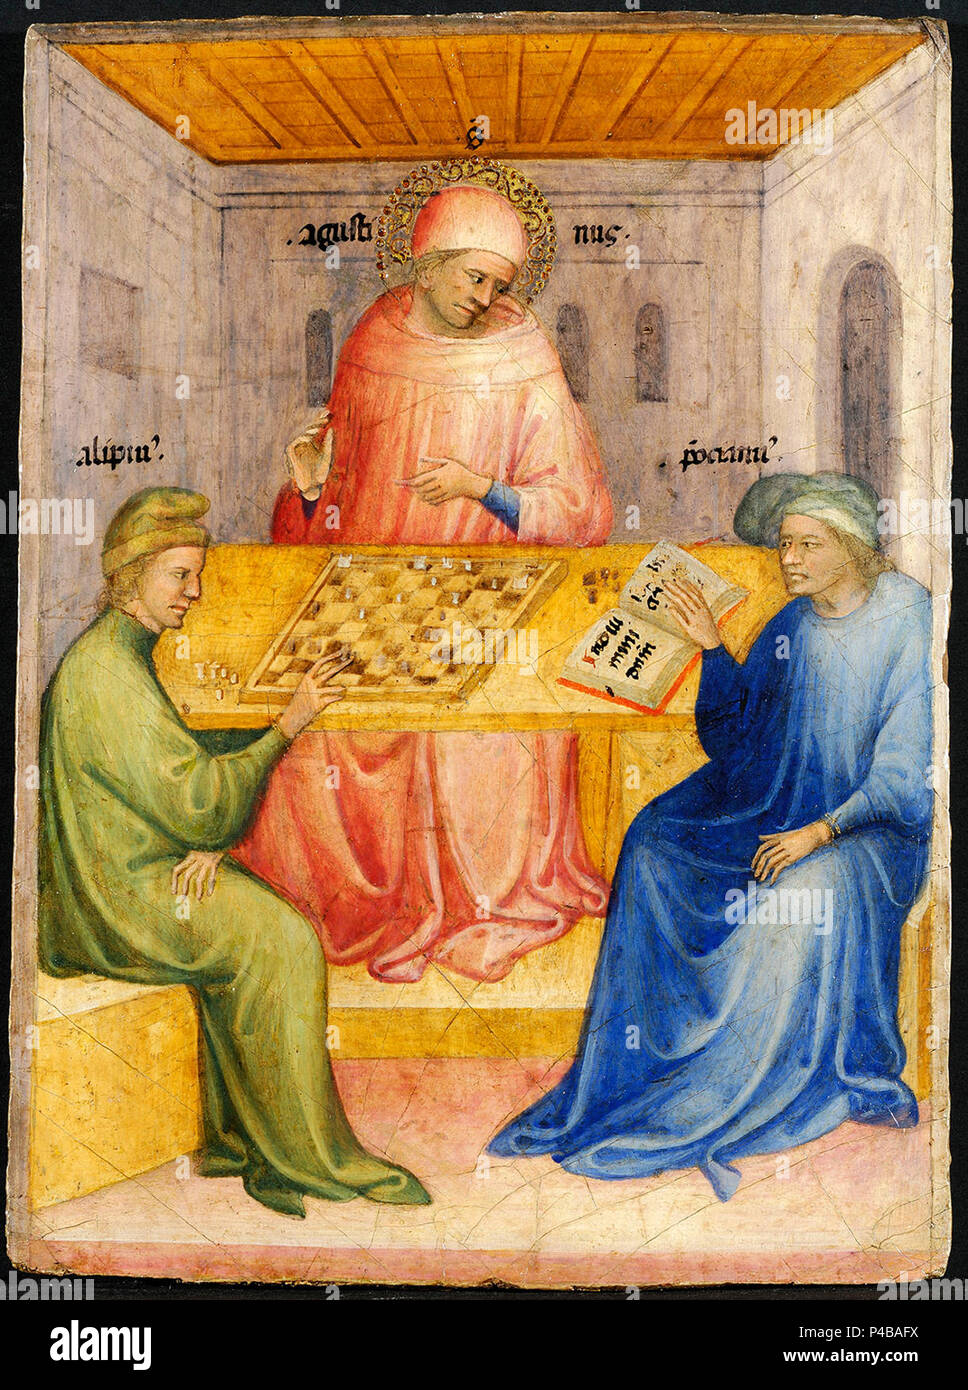 11 Nicolo di Pietro. Saint Augustin et Alypius reçoivent la visite de Ponticianus 1413-15 Musée des Beaux-Arts, Lyon. Stock Photo